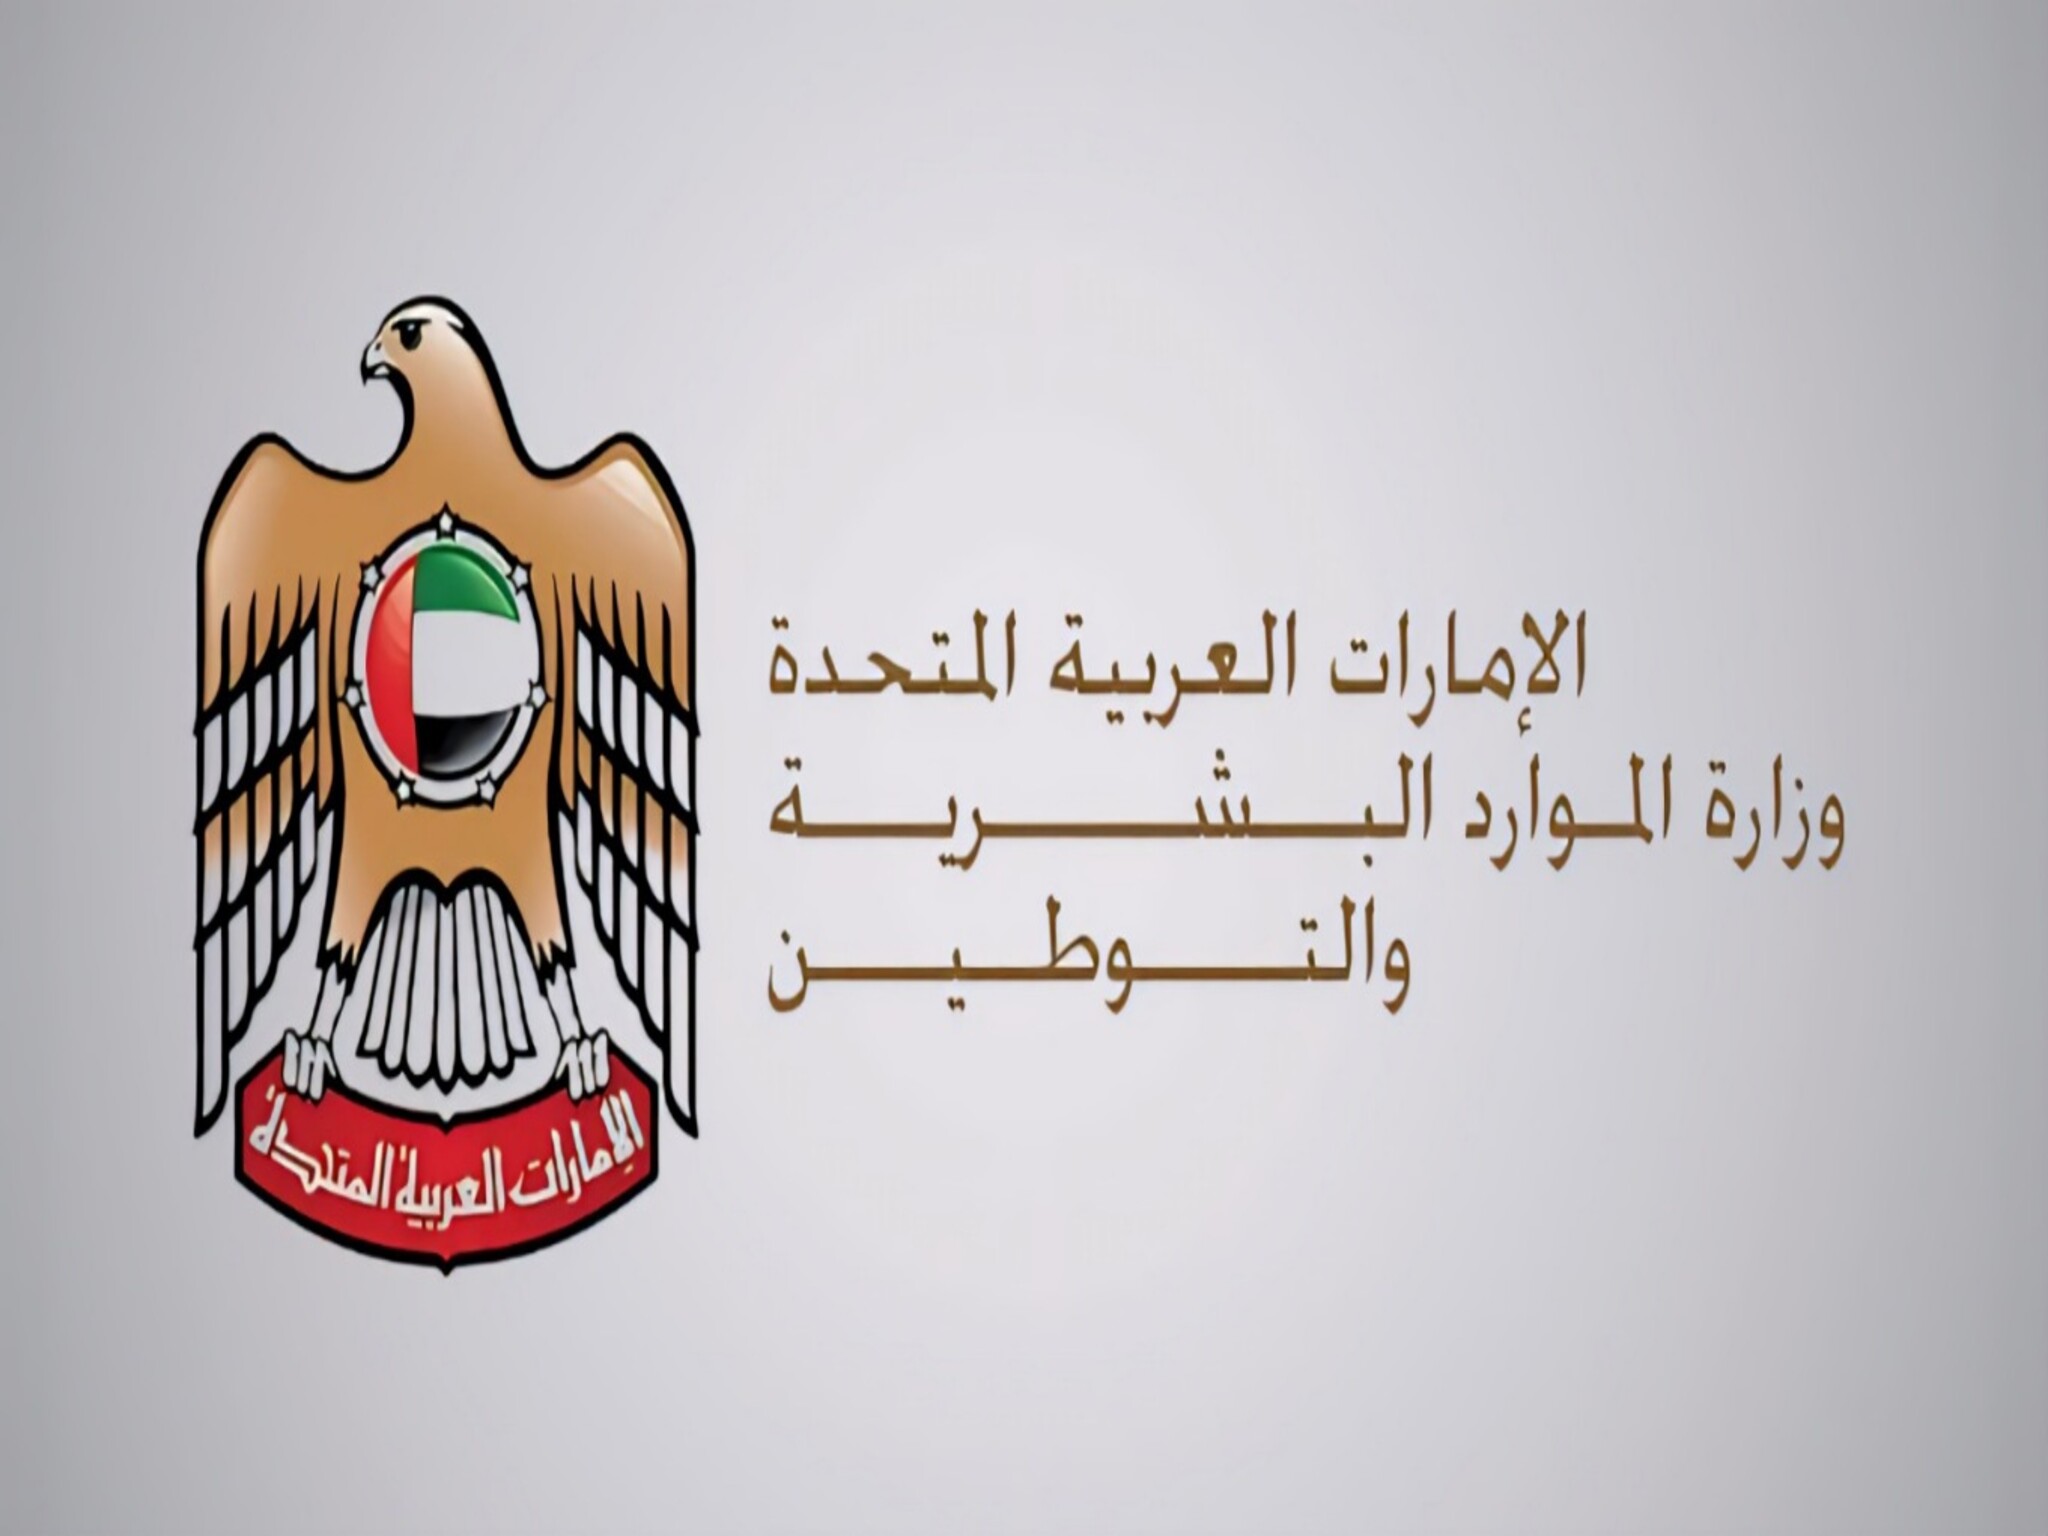 28 خدمة إلكترونية توفرها وزارة الموارد البشرية والتوطين في الإمارات